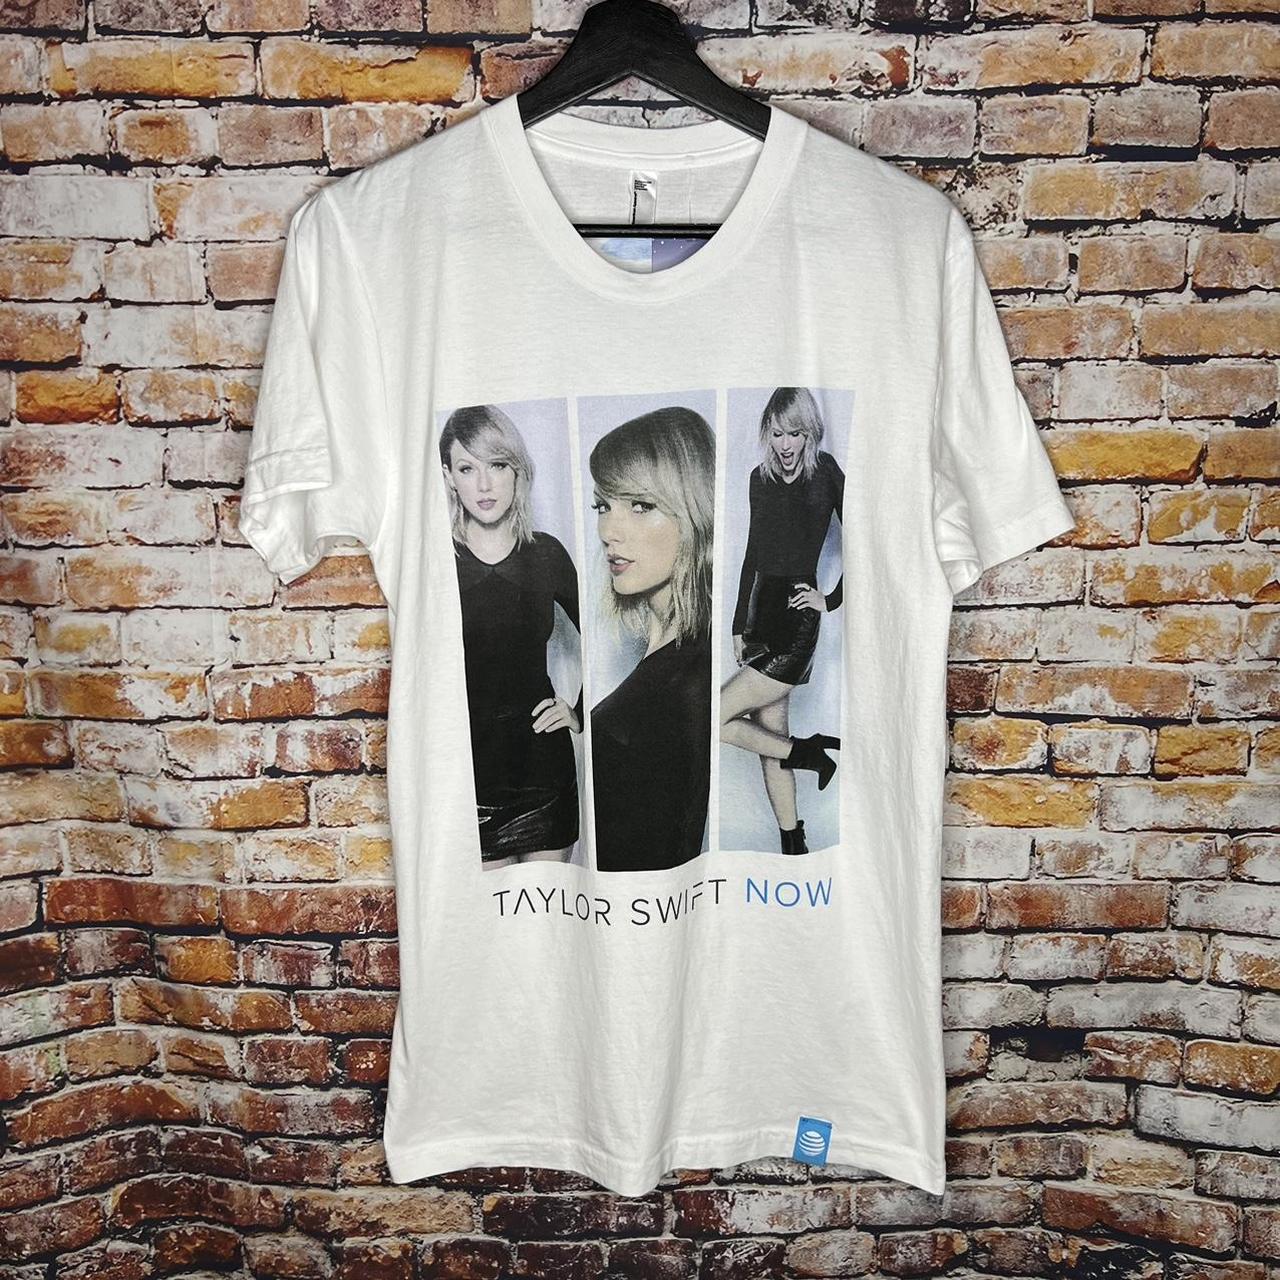 Taylor Swift 2010 Now Tour T Shirt, Size: M...